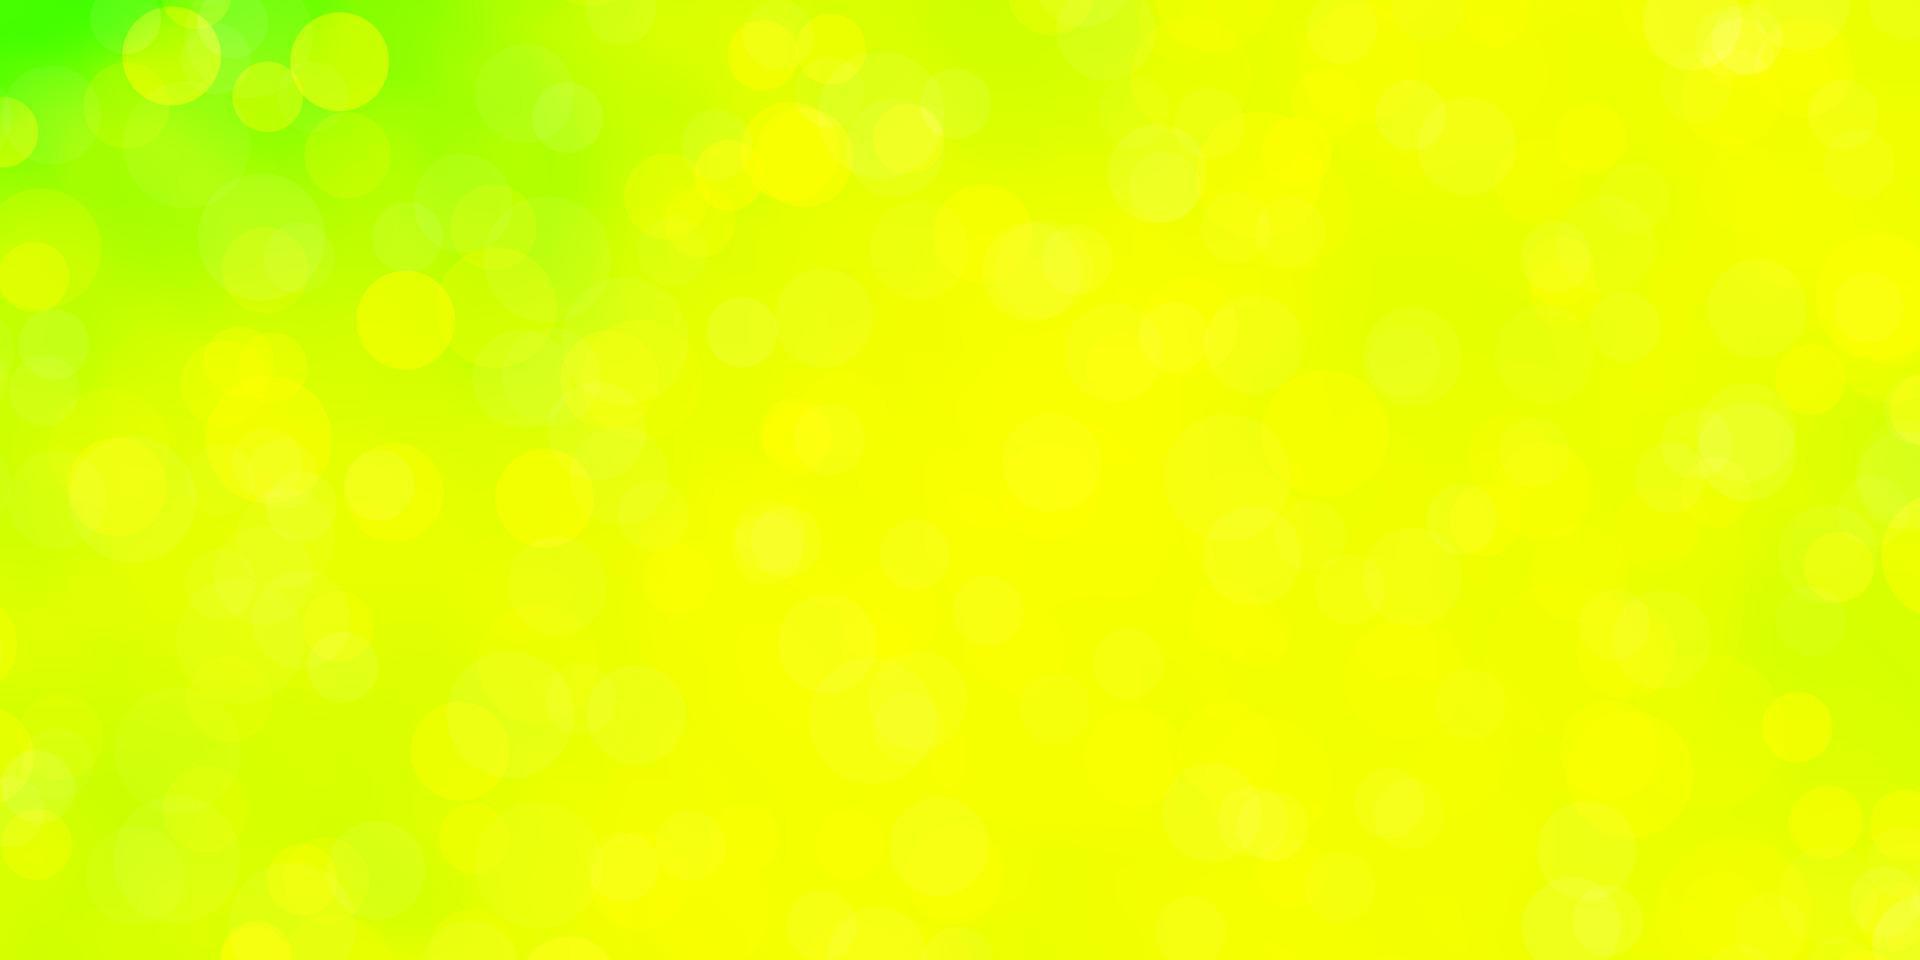 ljusgrönt, gult vektormönster med cirklar. vektor